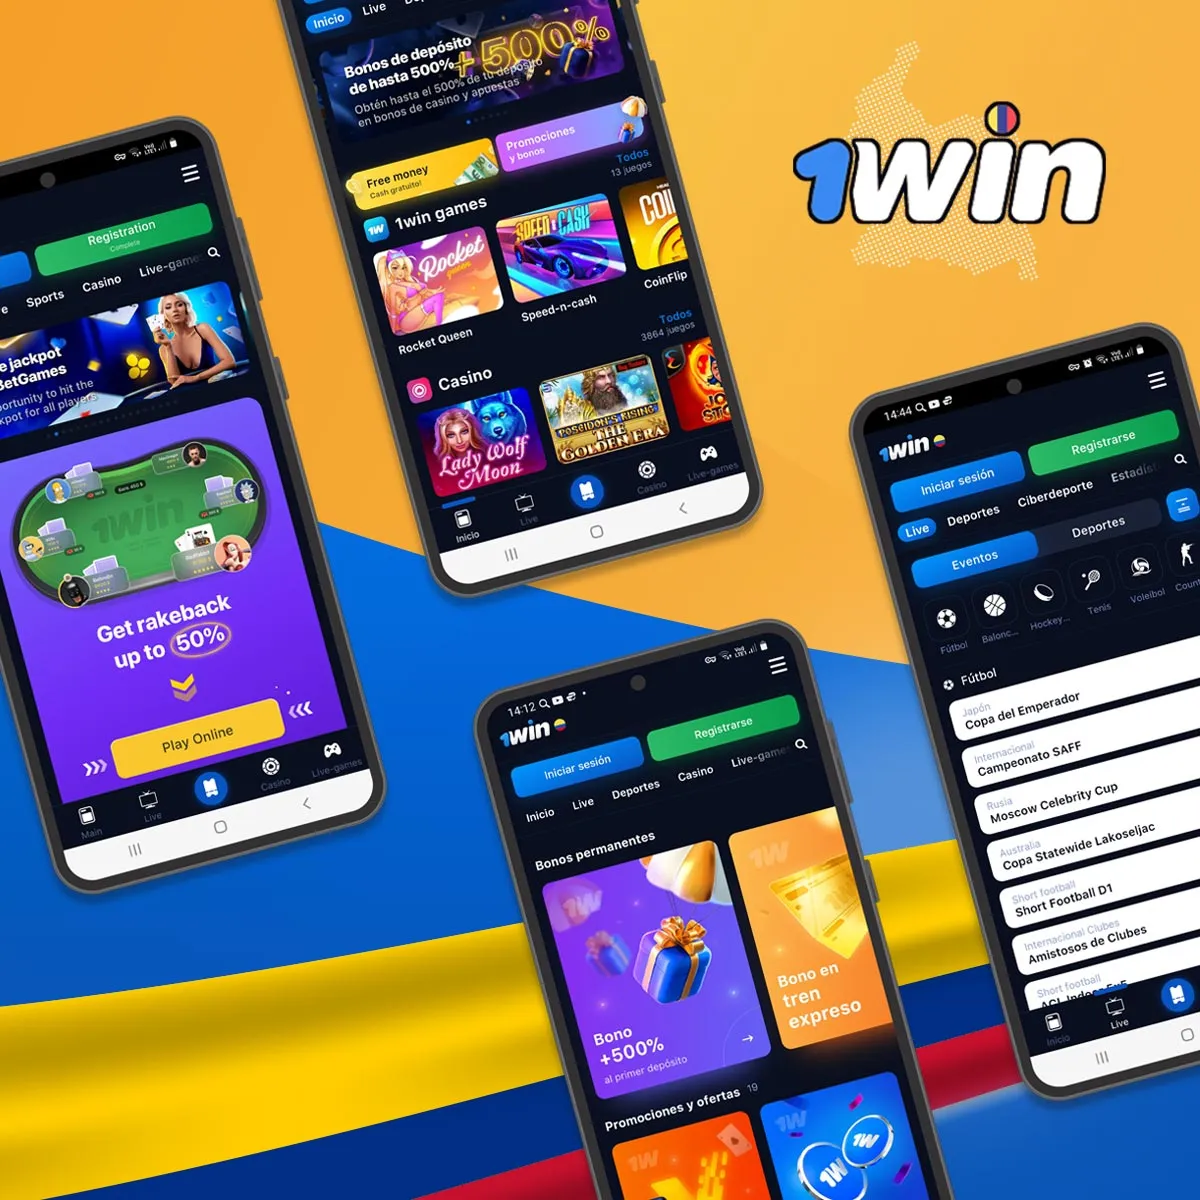 1win Mejor aplicación móvil para apuestas en línea en Colombia